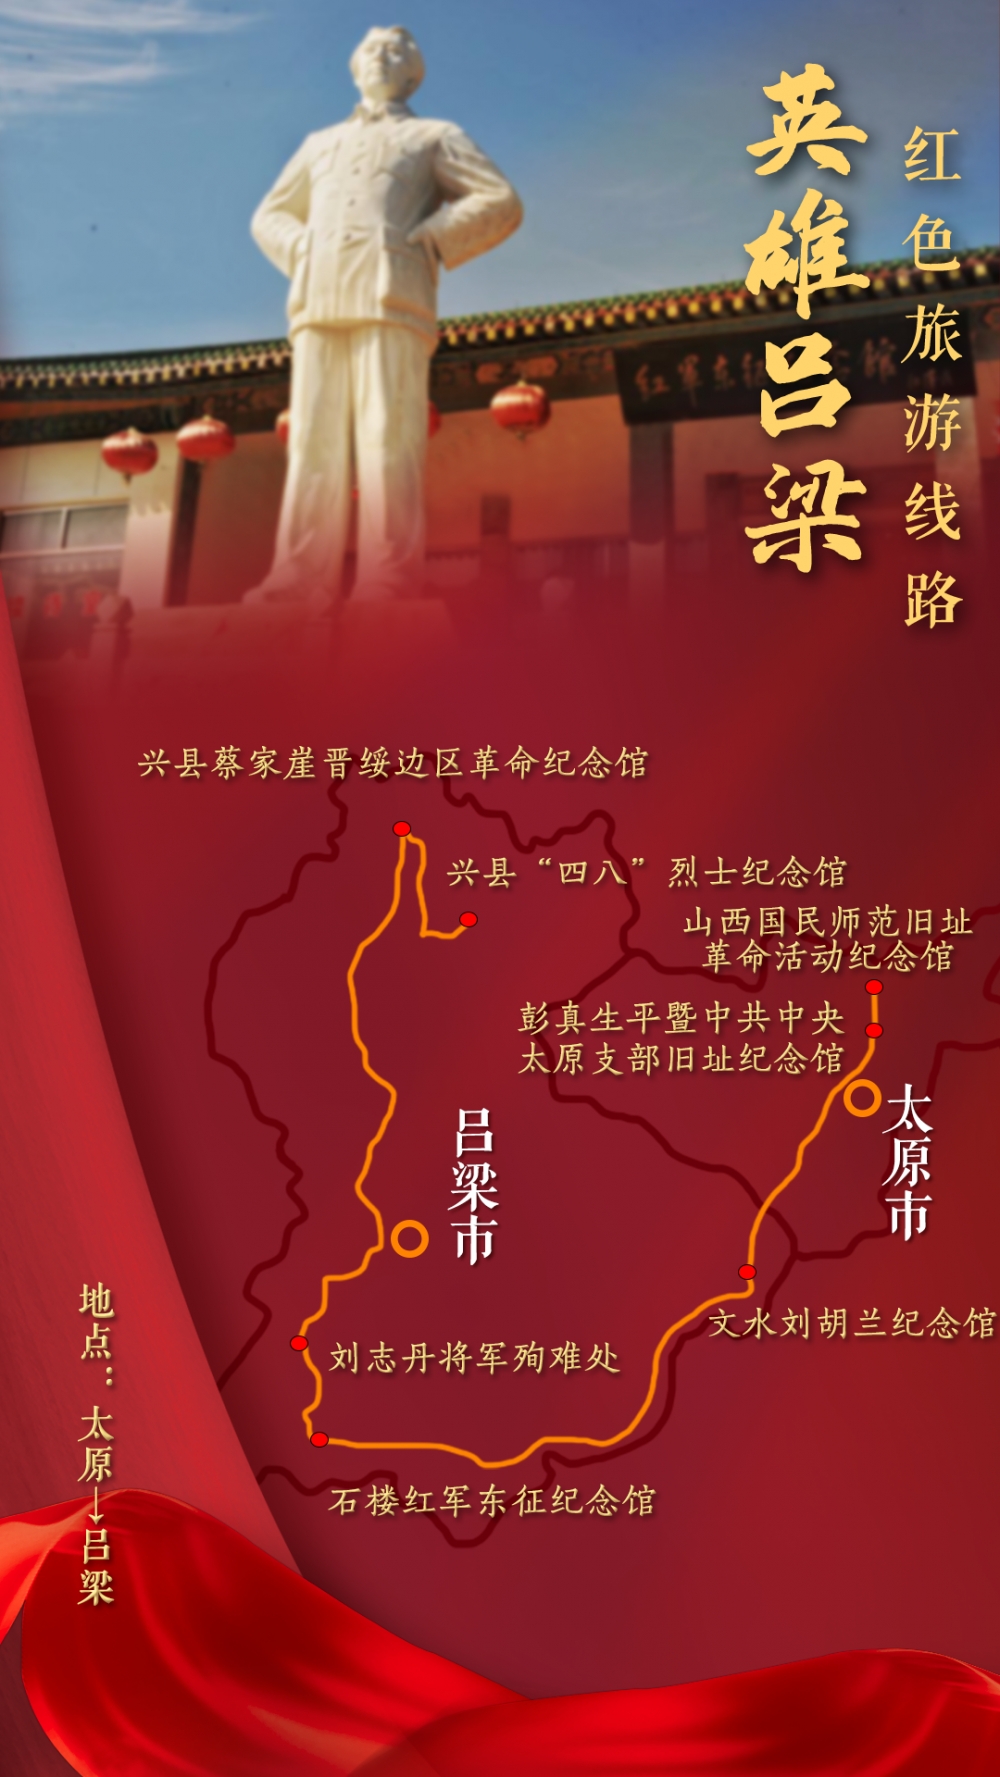 山西临汾红色旅游景点图片